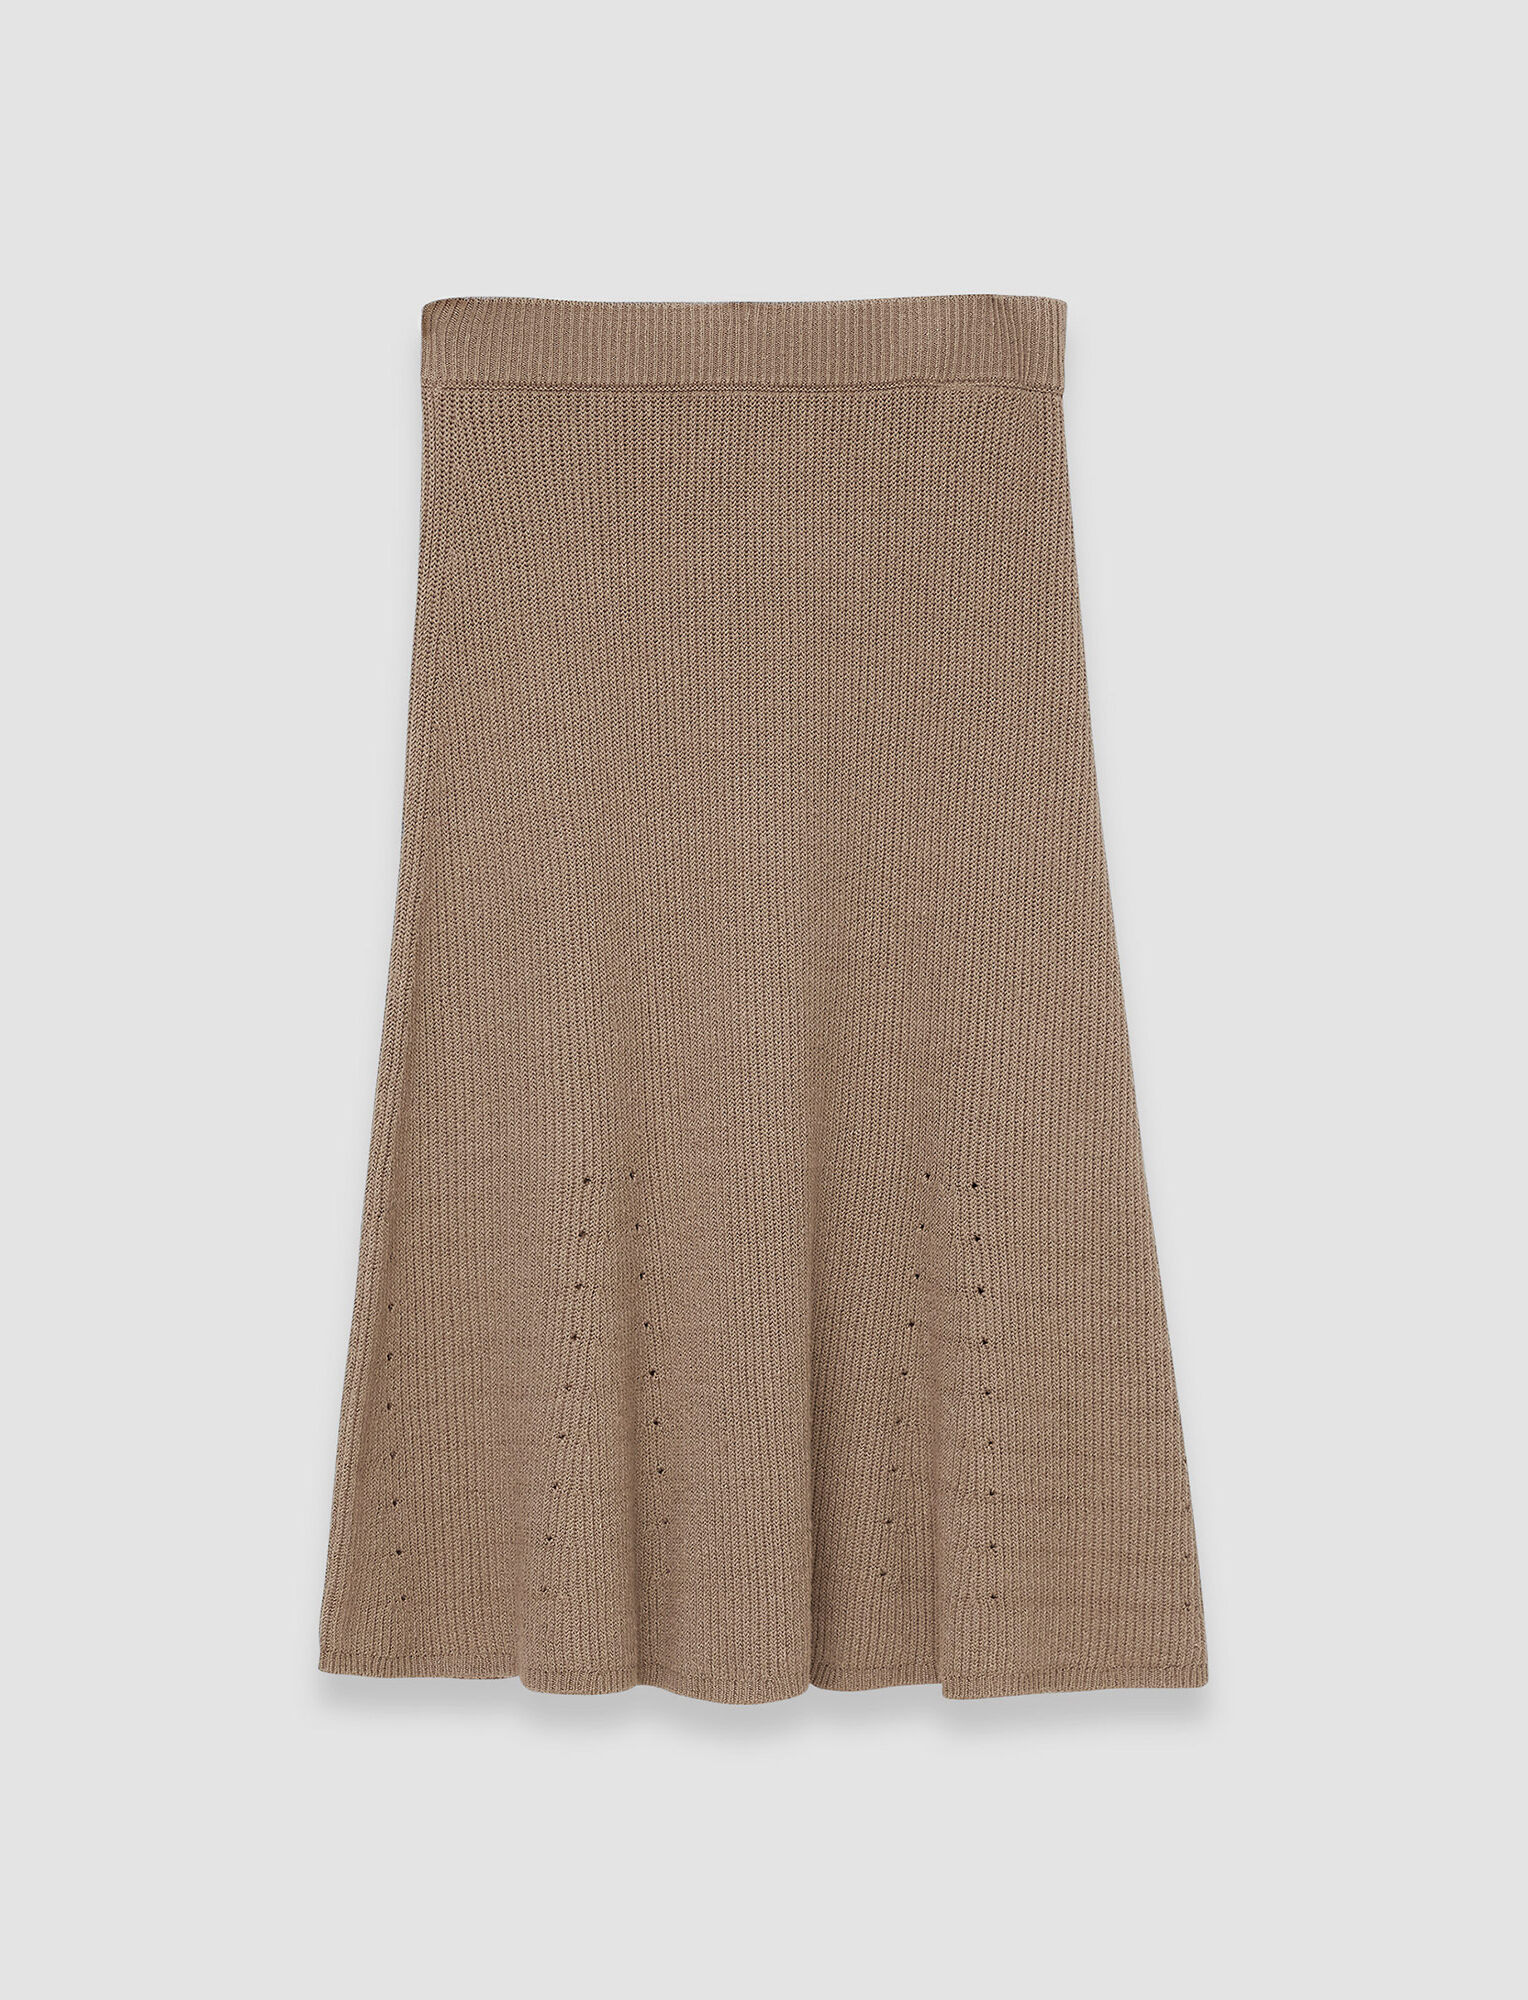 Joseph, Linen Cotton Knitted Skirt, in Frozen Mocha